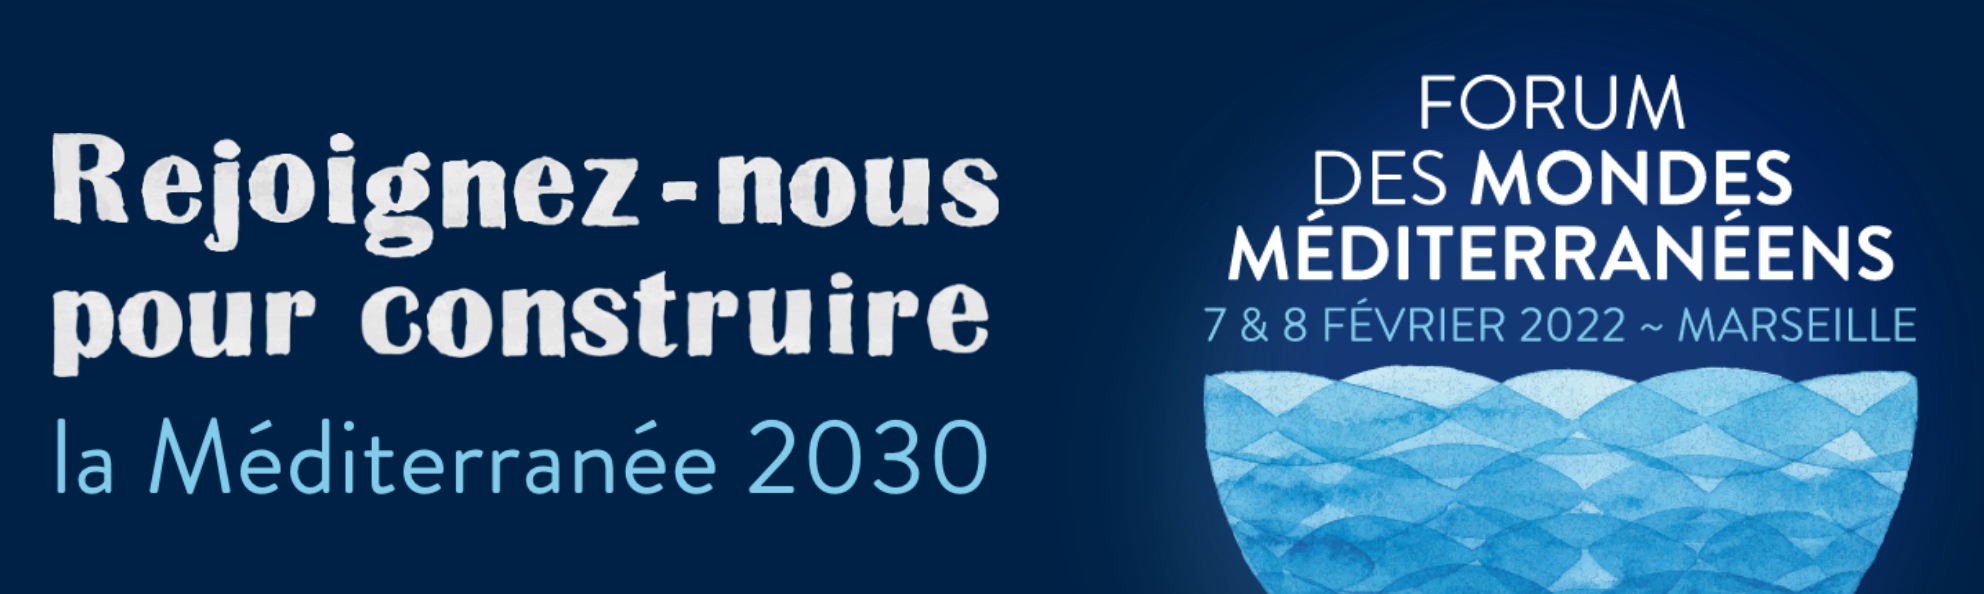 Le Forum des mondes méditerranéens se tient à Marseille les 7 et 8 février 2022 !!!